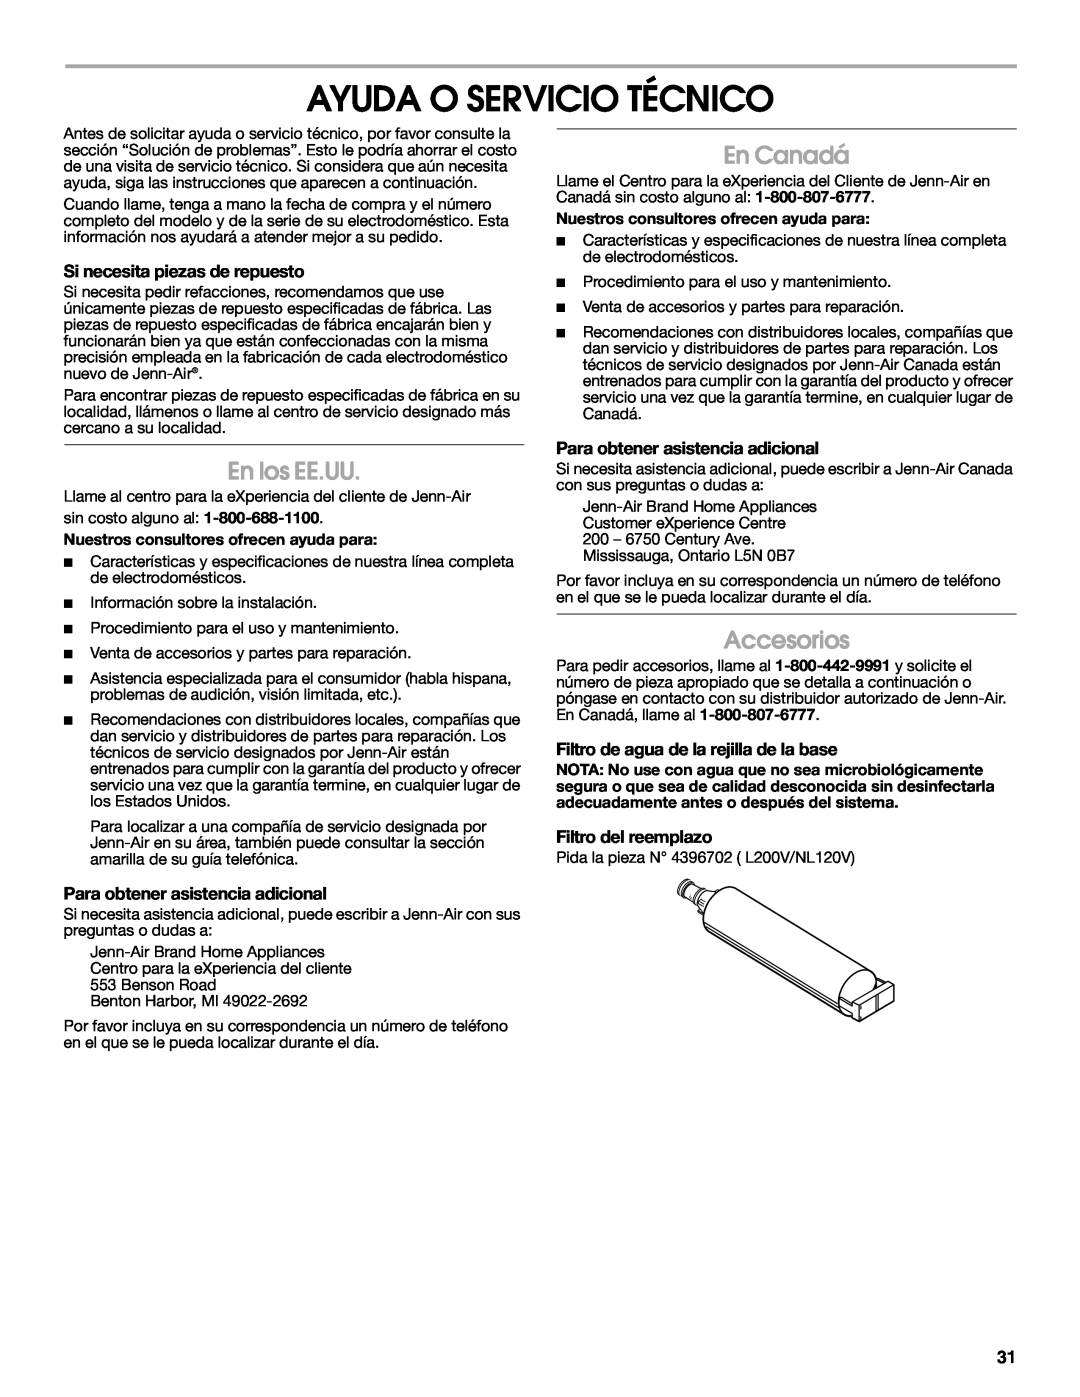 Jenn-Air W10310149A manual Ayuda O Servicio Técnico, En los EE.UU, En Canadá, Accesorios, Si necesita piezas de repuesto 